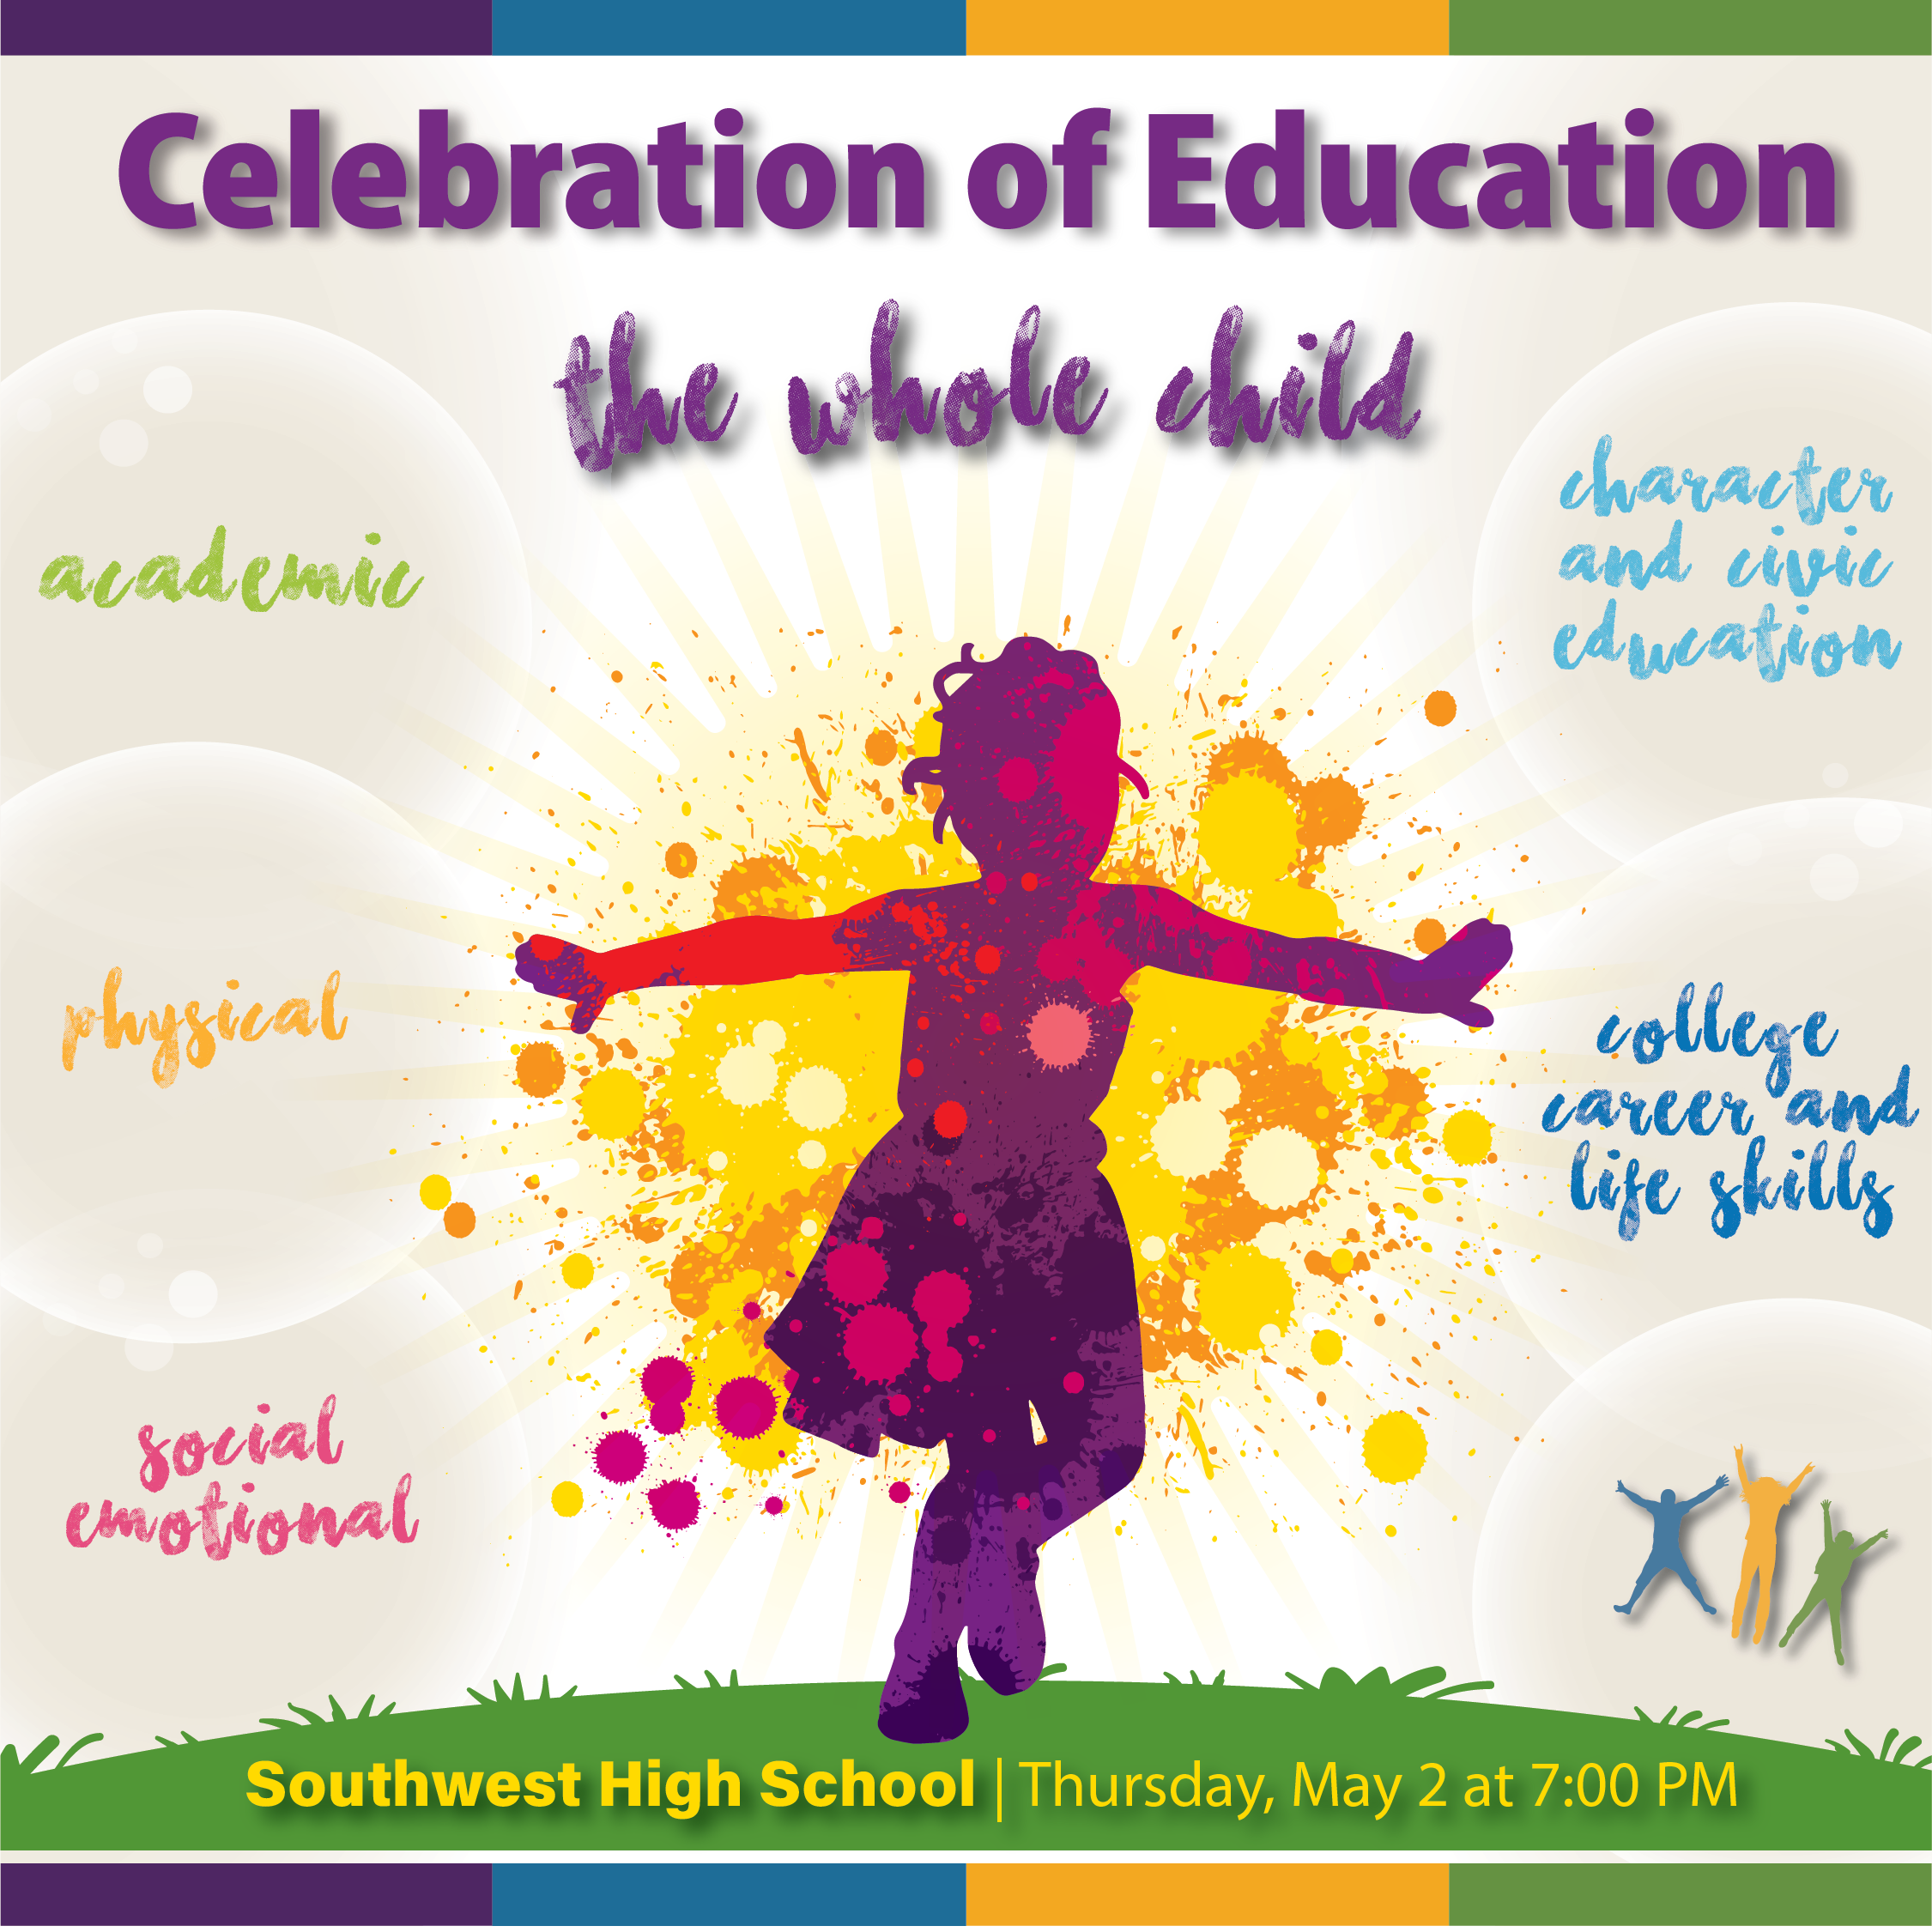 Celebration of Education Theme: The Whole Child